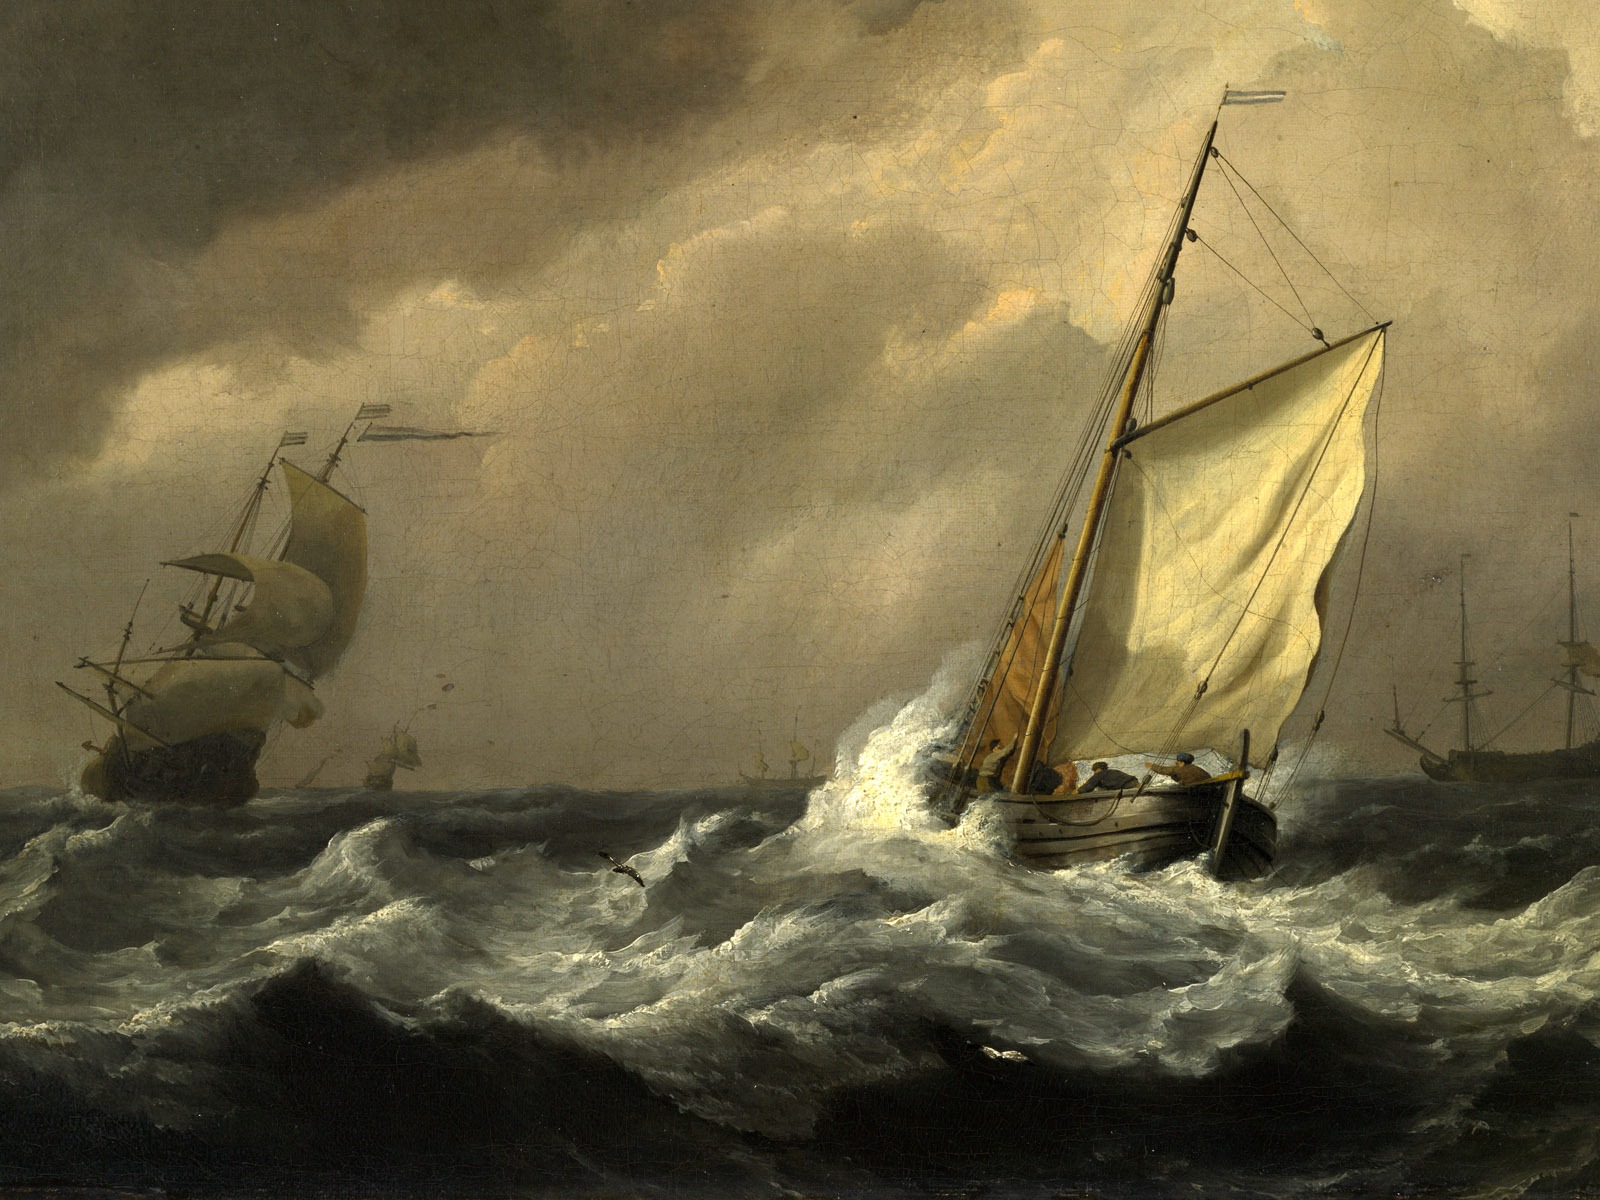 伦敦画廊帆船 壁纸(二)14 - 1600x1200